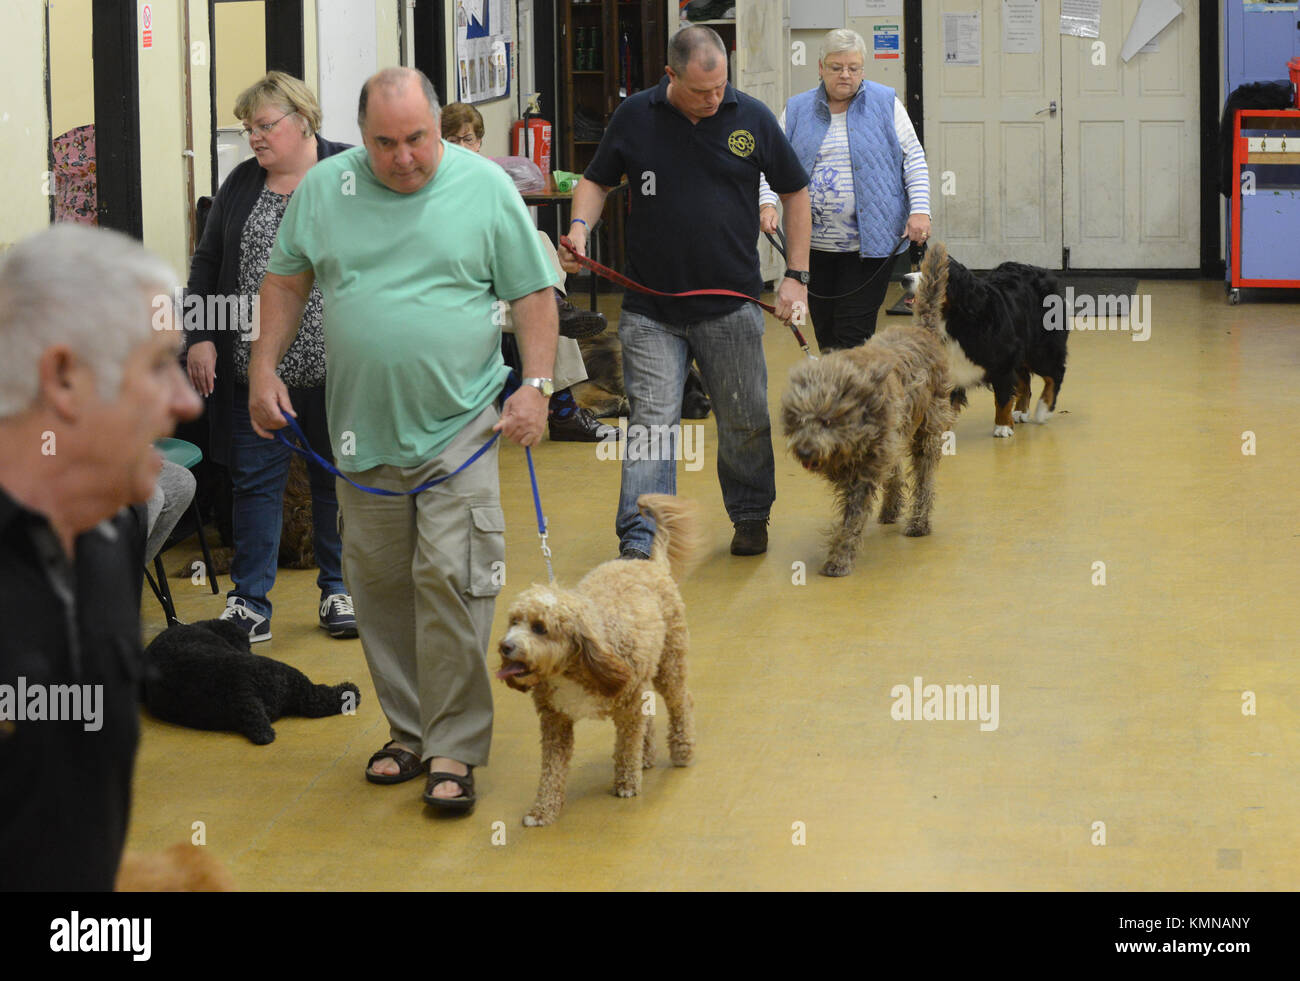 Abgebildet sind Leute mit Hunden an der Leine bei einem Hund Ausbildung Klasse. Stockfoto